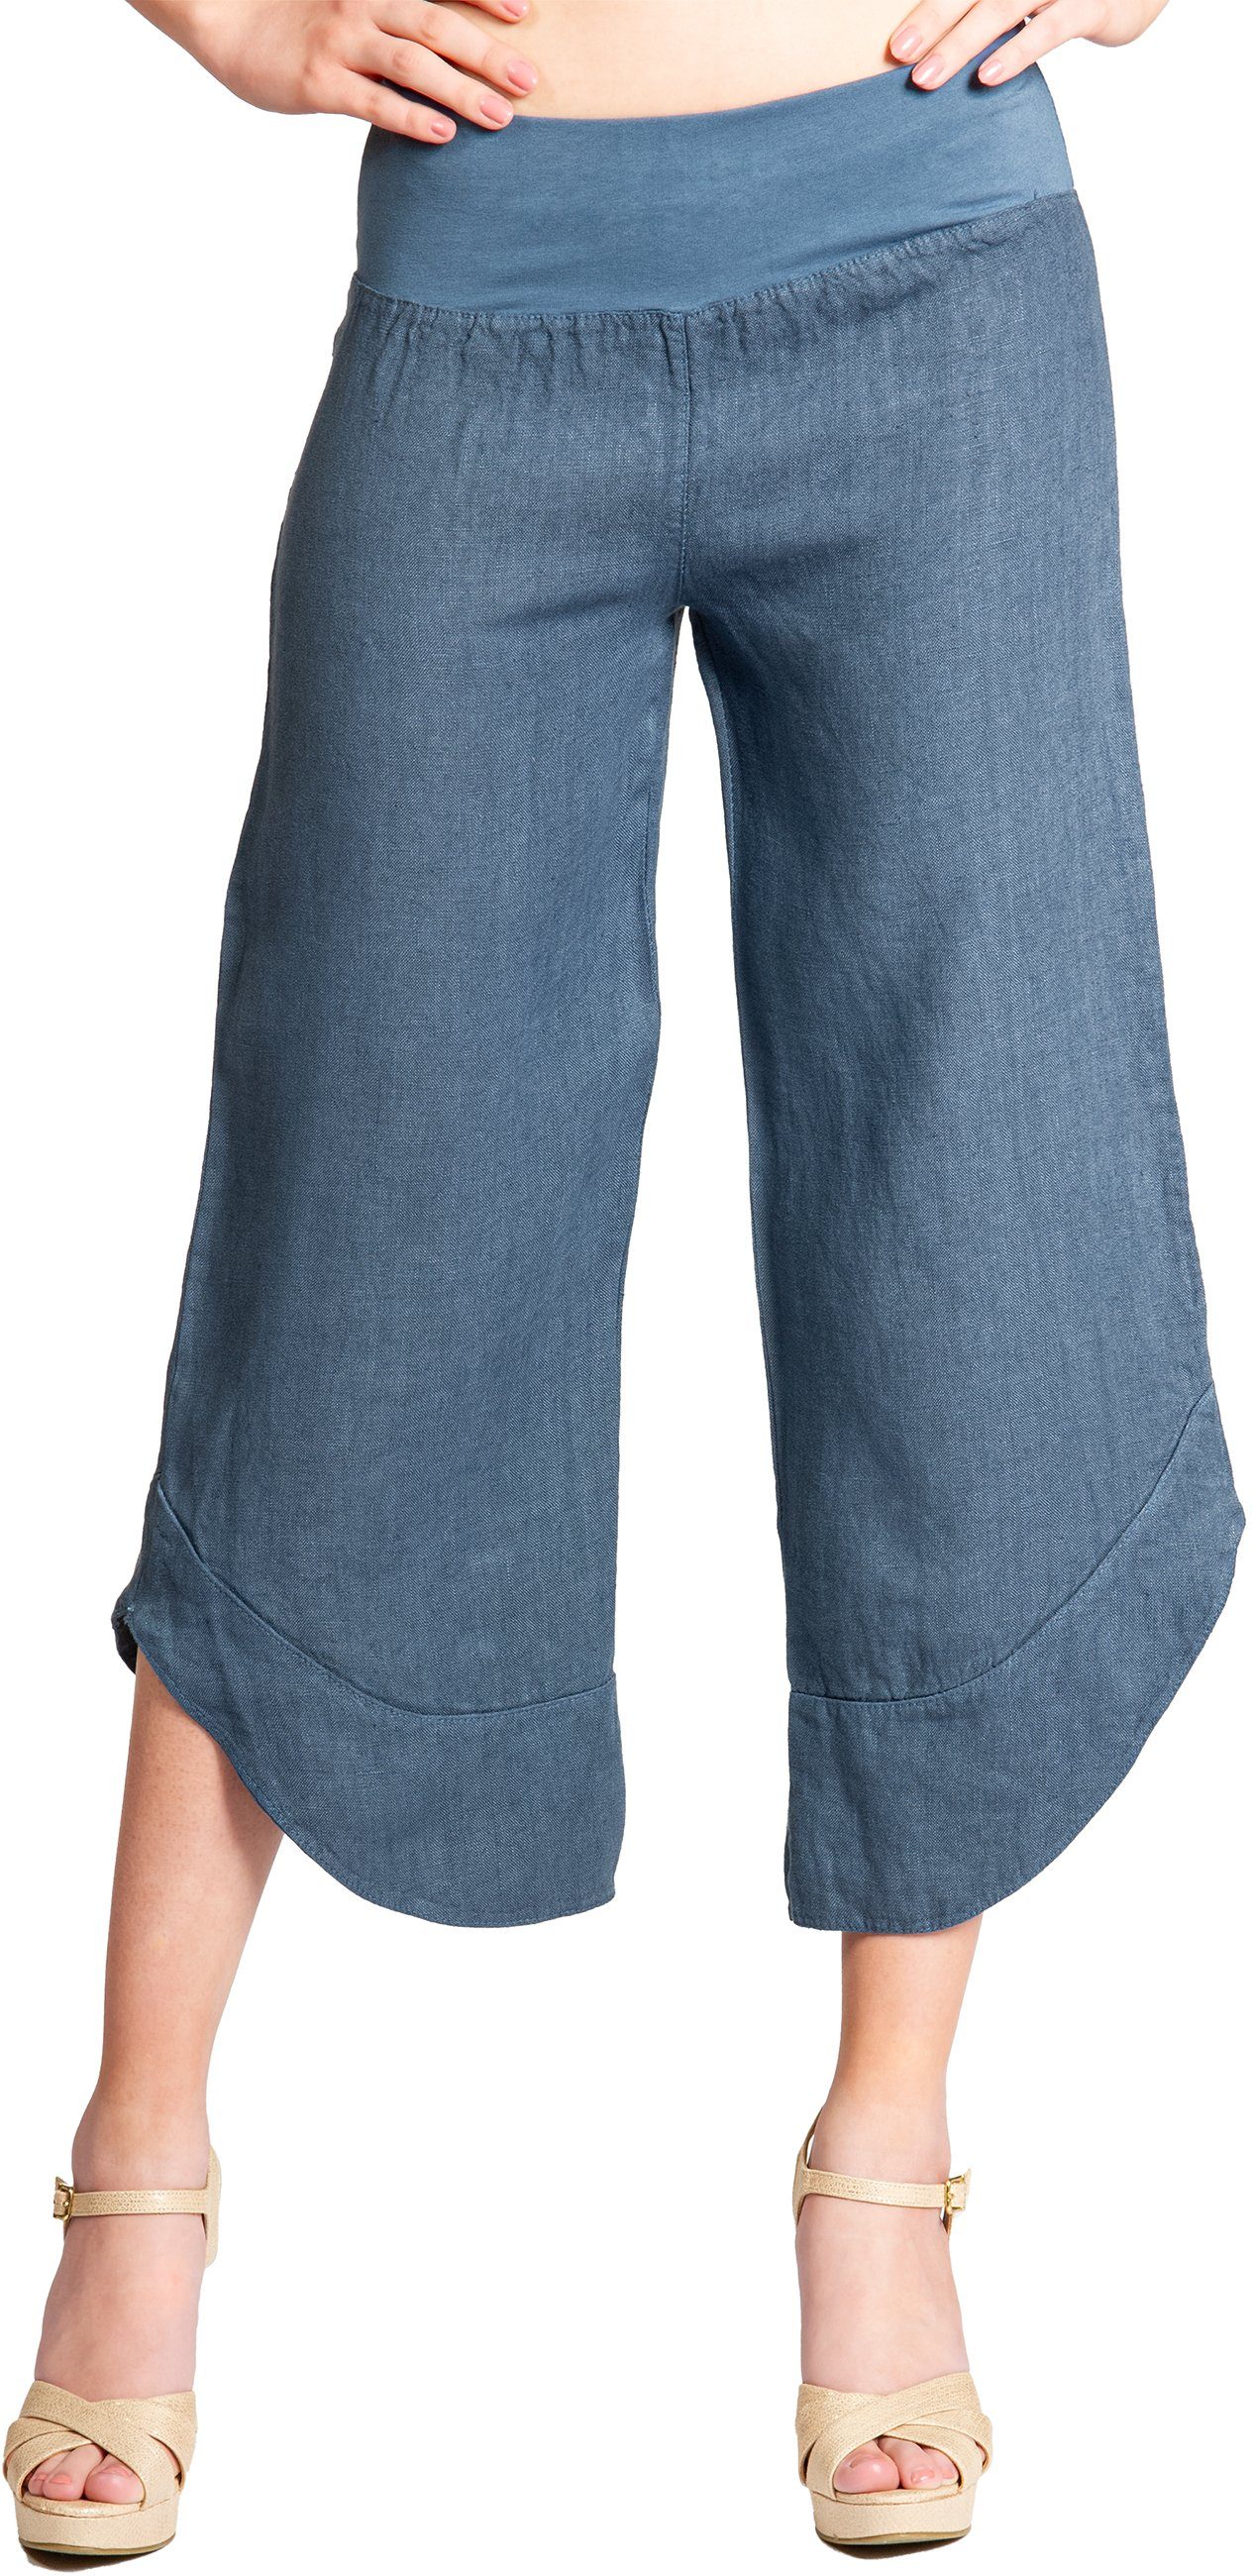 Caspar Leinenhose KHS052 Damen 3/4 robustem jeans blau Leinen Hose aus Capri